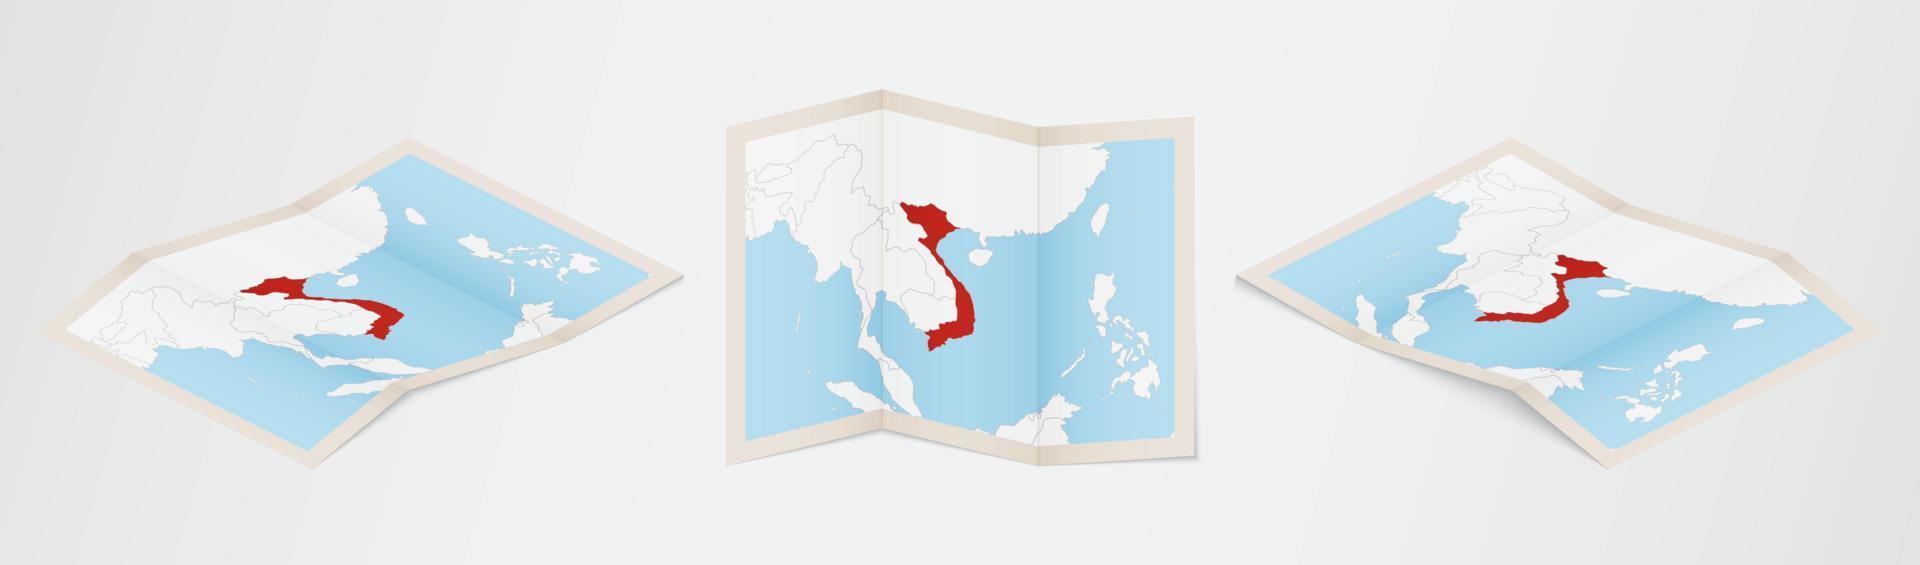 gevouwen kaart van Vietnam in drie verschillend versies. vector